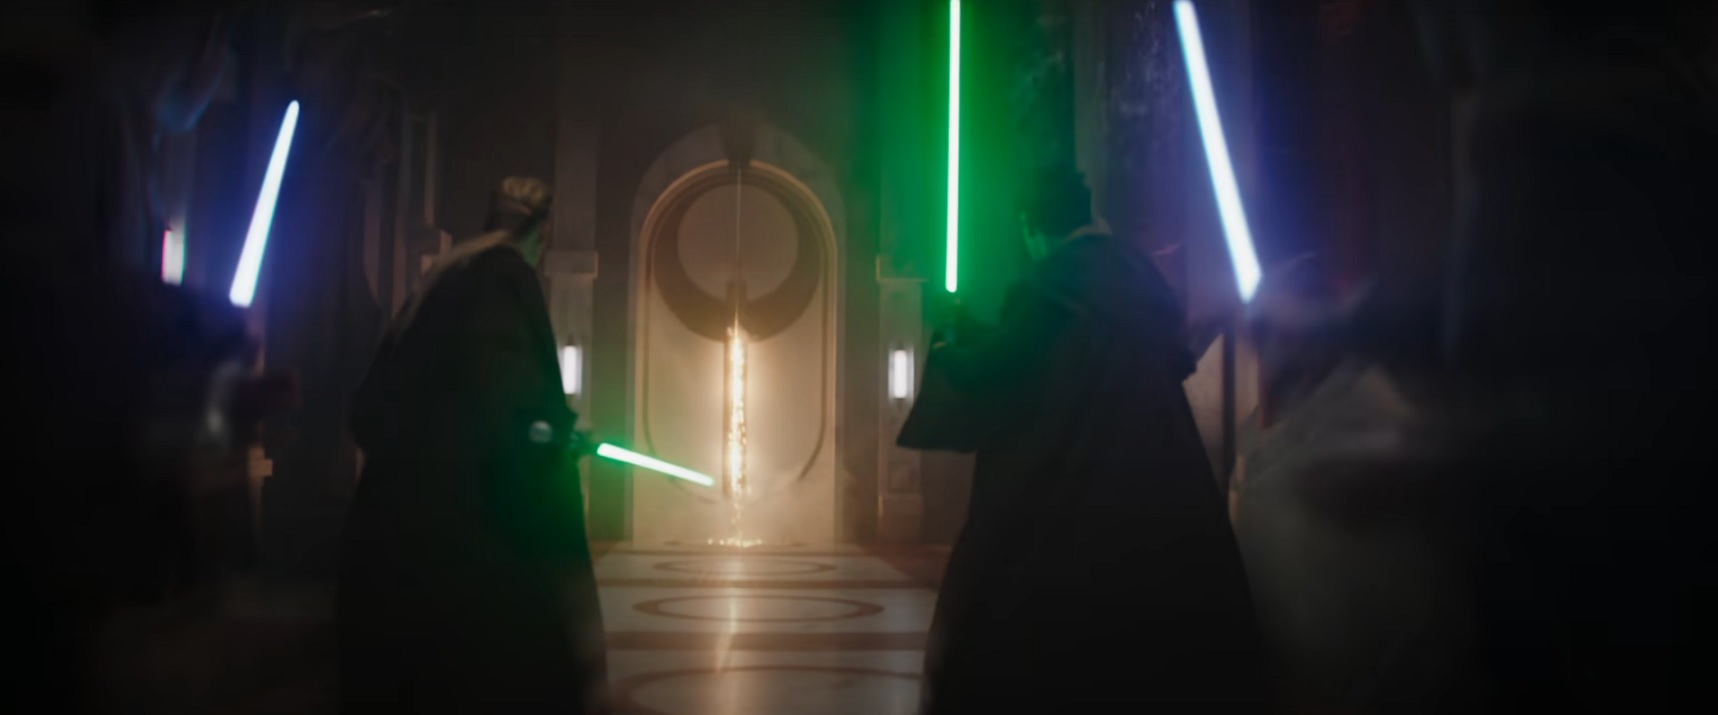 The Mandalorian - Trailer da 3ª temporada sugere aparição de Anakin Skywalker